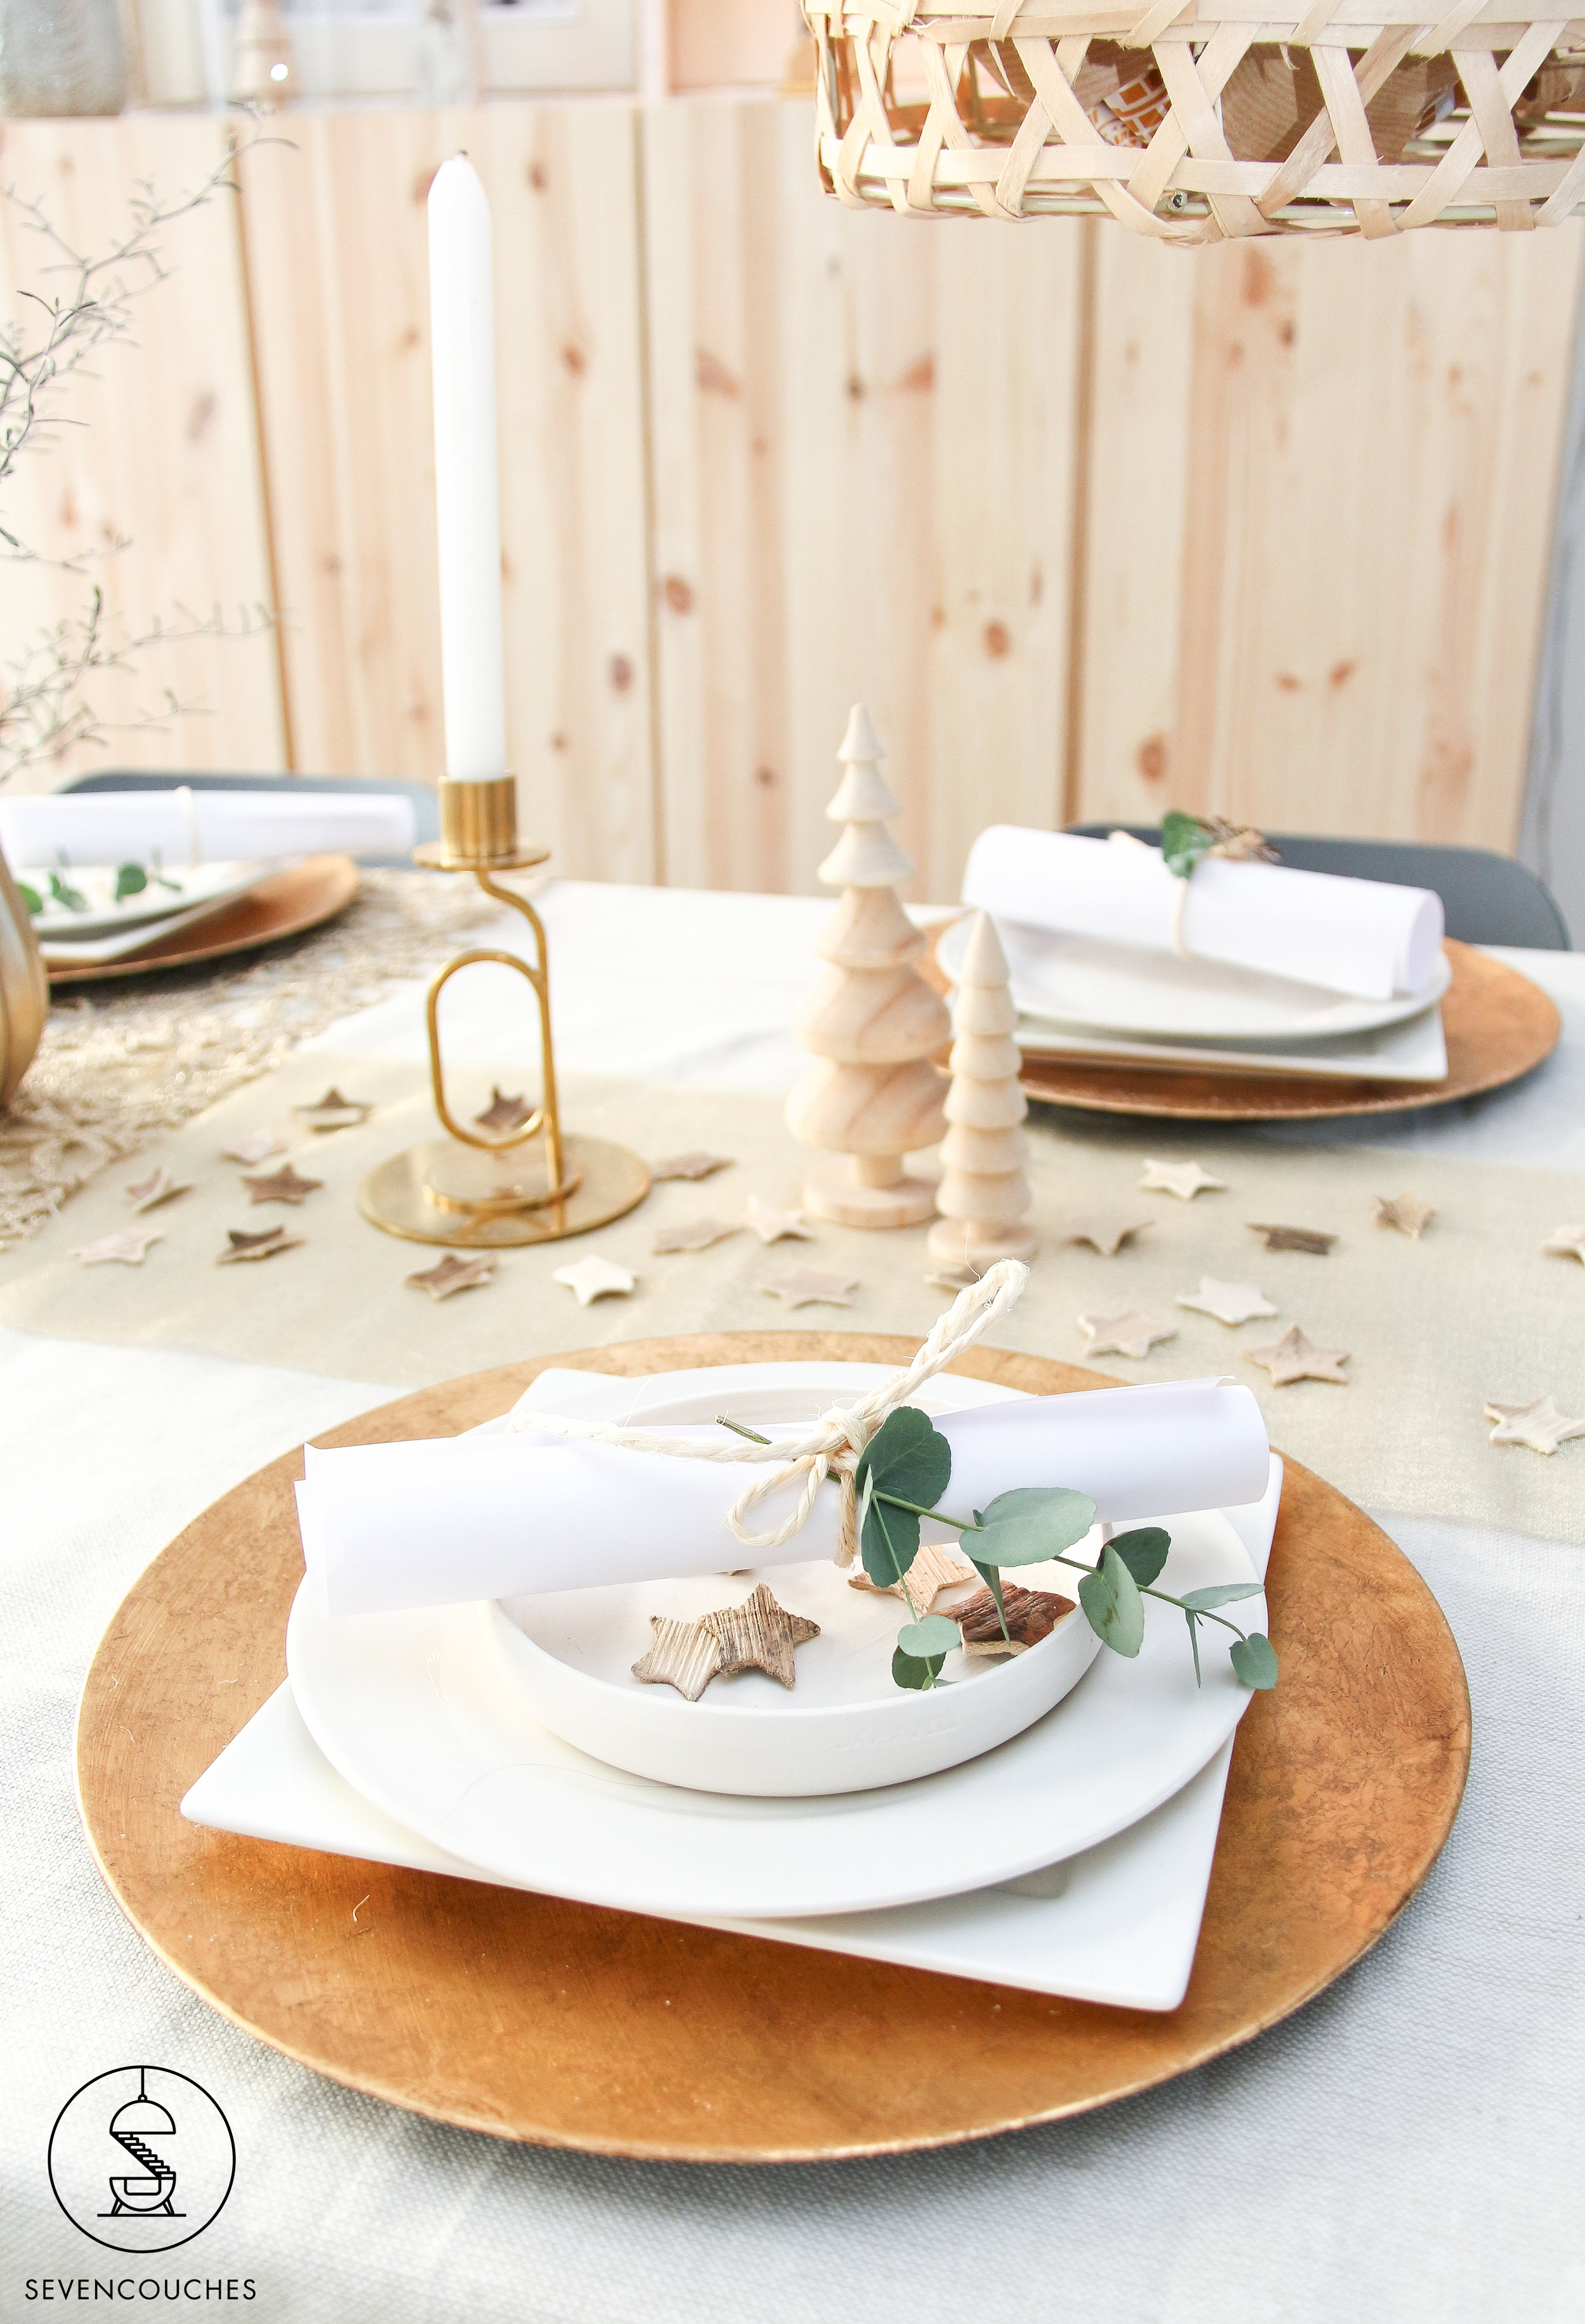 : Met deze kerstversiering krijgt je eettafel een feestelijke look — sevencouches